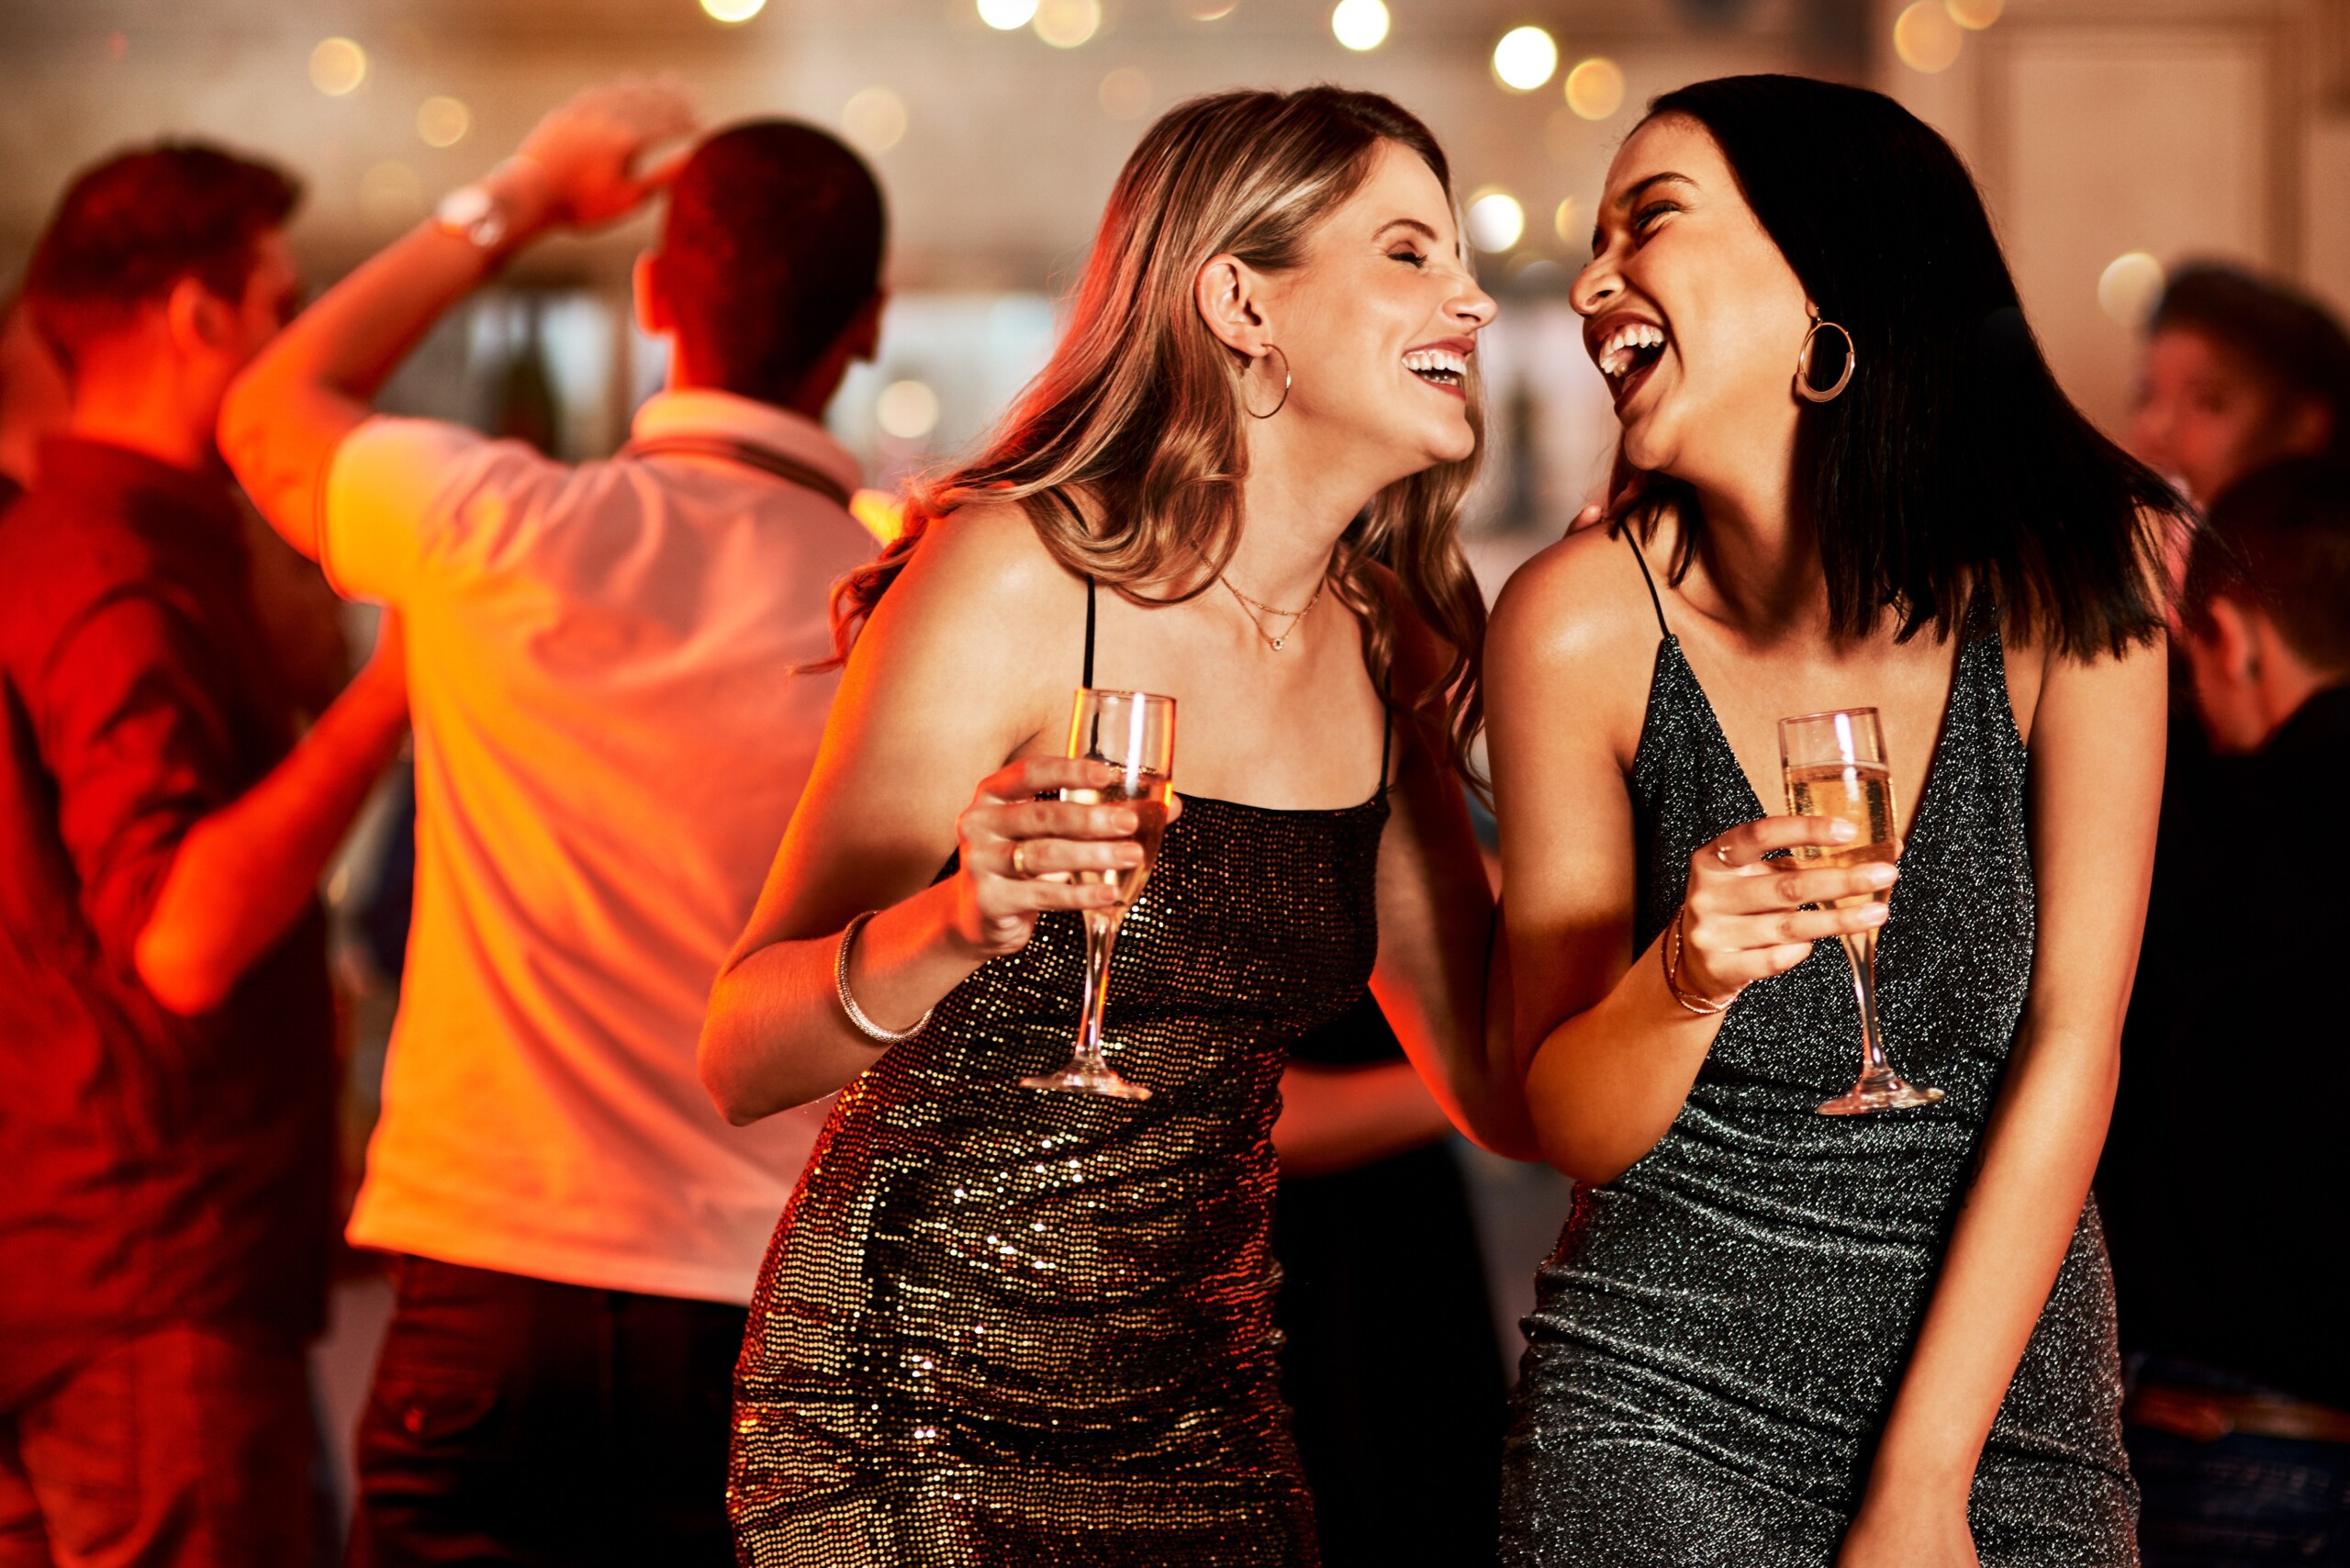 Kobiety śmiejące się podczas wieczornej imprezy szampańskiej, imprezy klubowej lub obchodów urodzin w Nowym Jorku. Uśmiech, szczęśliwi ludzie lub przyjaciele z kieliszkami alkoholu w luksusowej restauracji lub na parkiecie dyskotekowym, licencja: shutterstock/By PeopleImages-Yuri+A